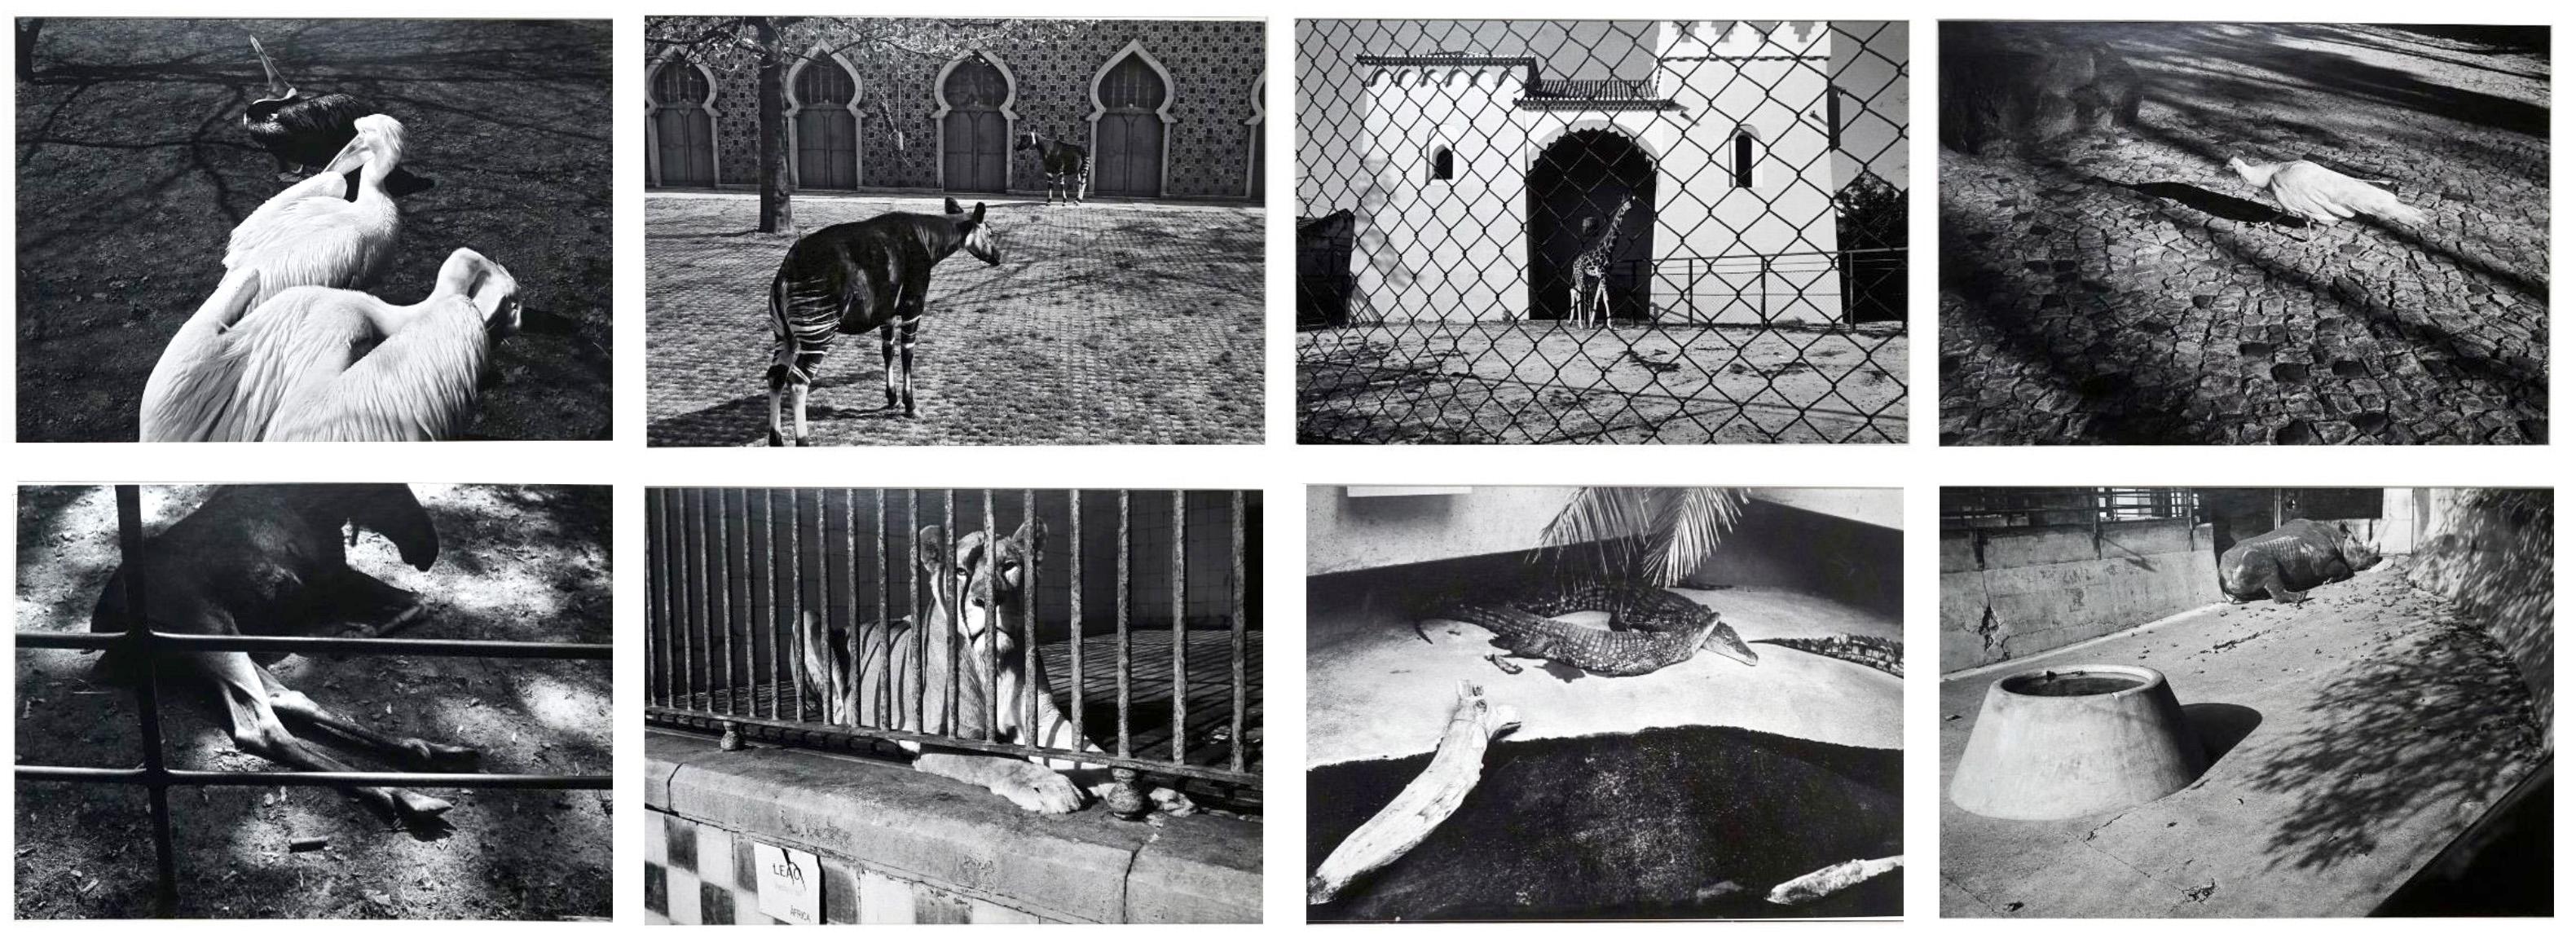 Abstract Photograph Jörg Krichbaum - Parc Zoologique - Coffret Prestige # 3 - 1980, Minimalist Black and White Photog